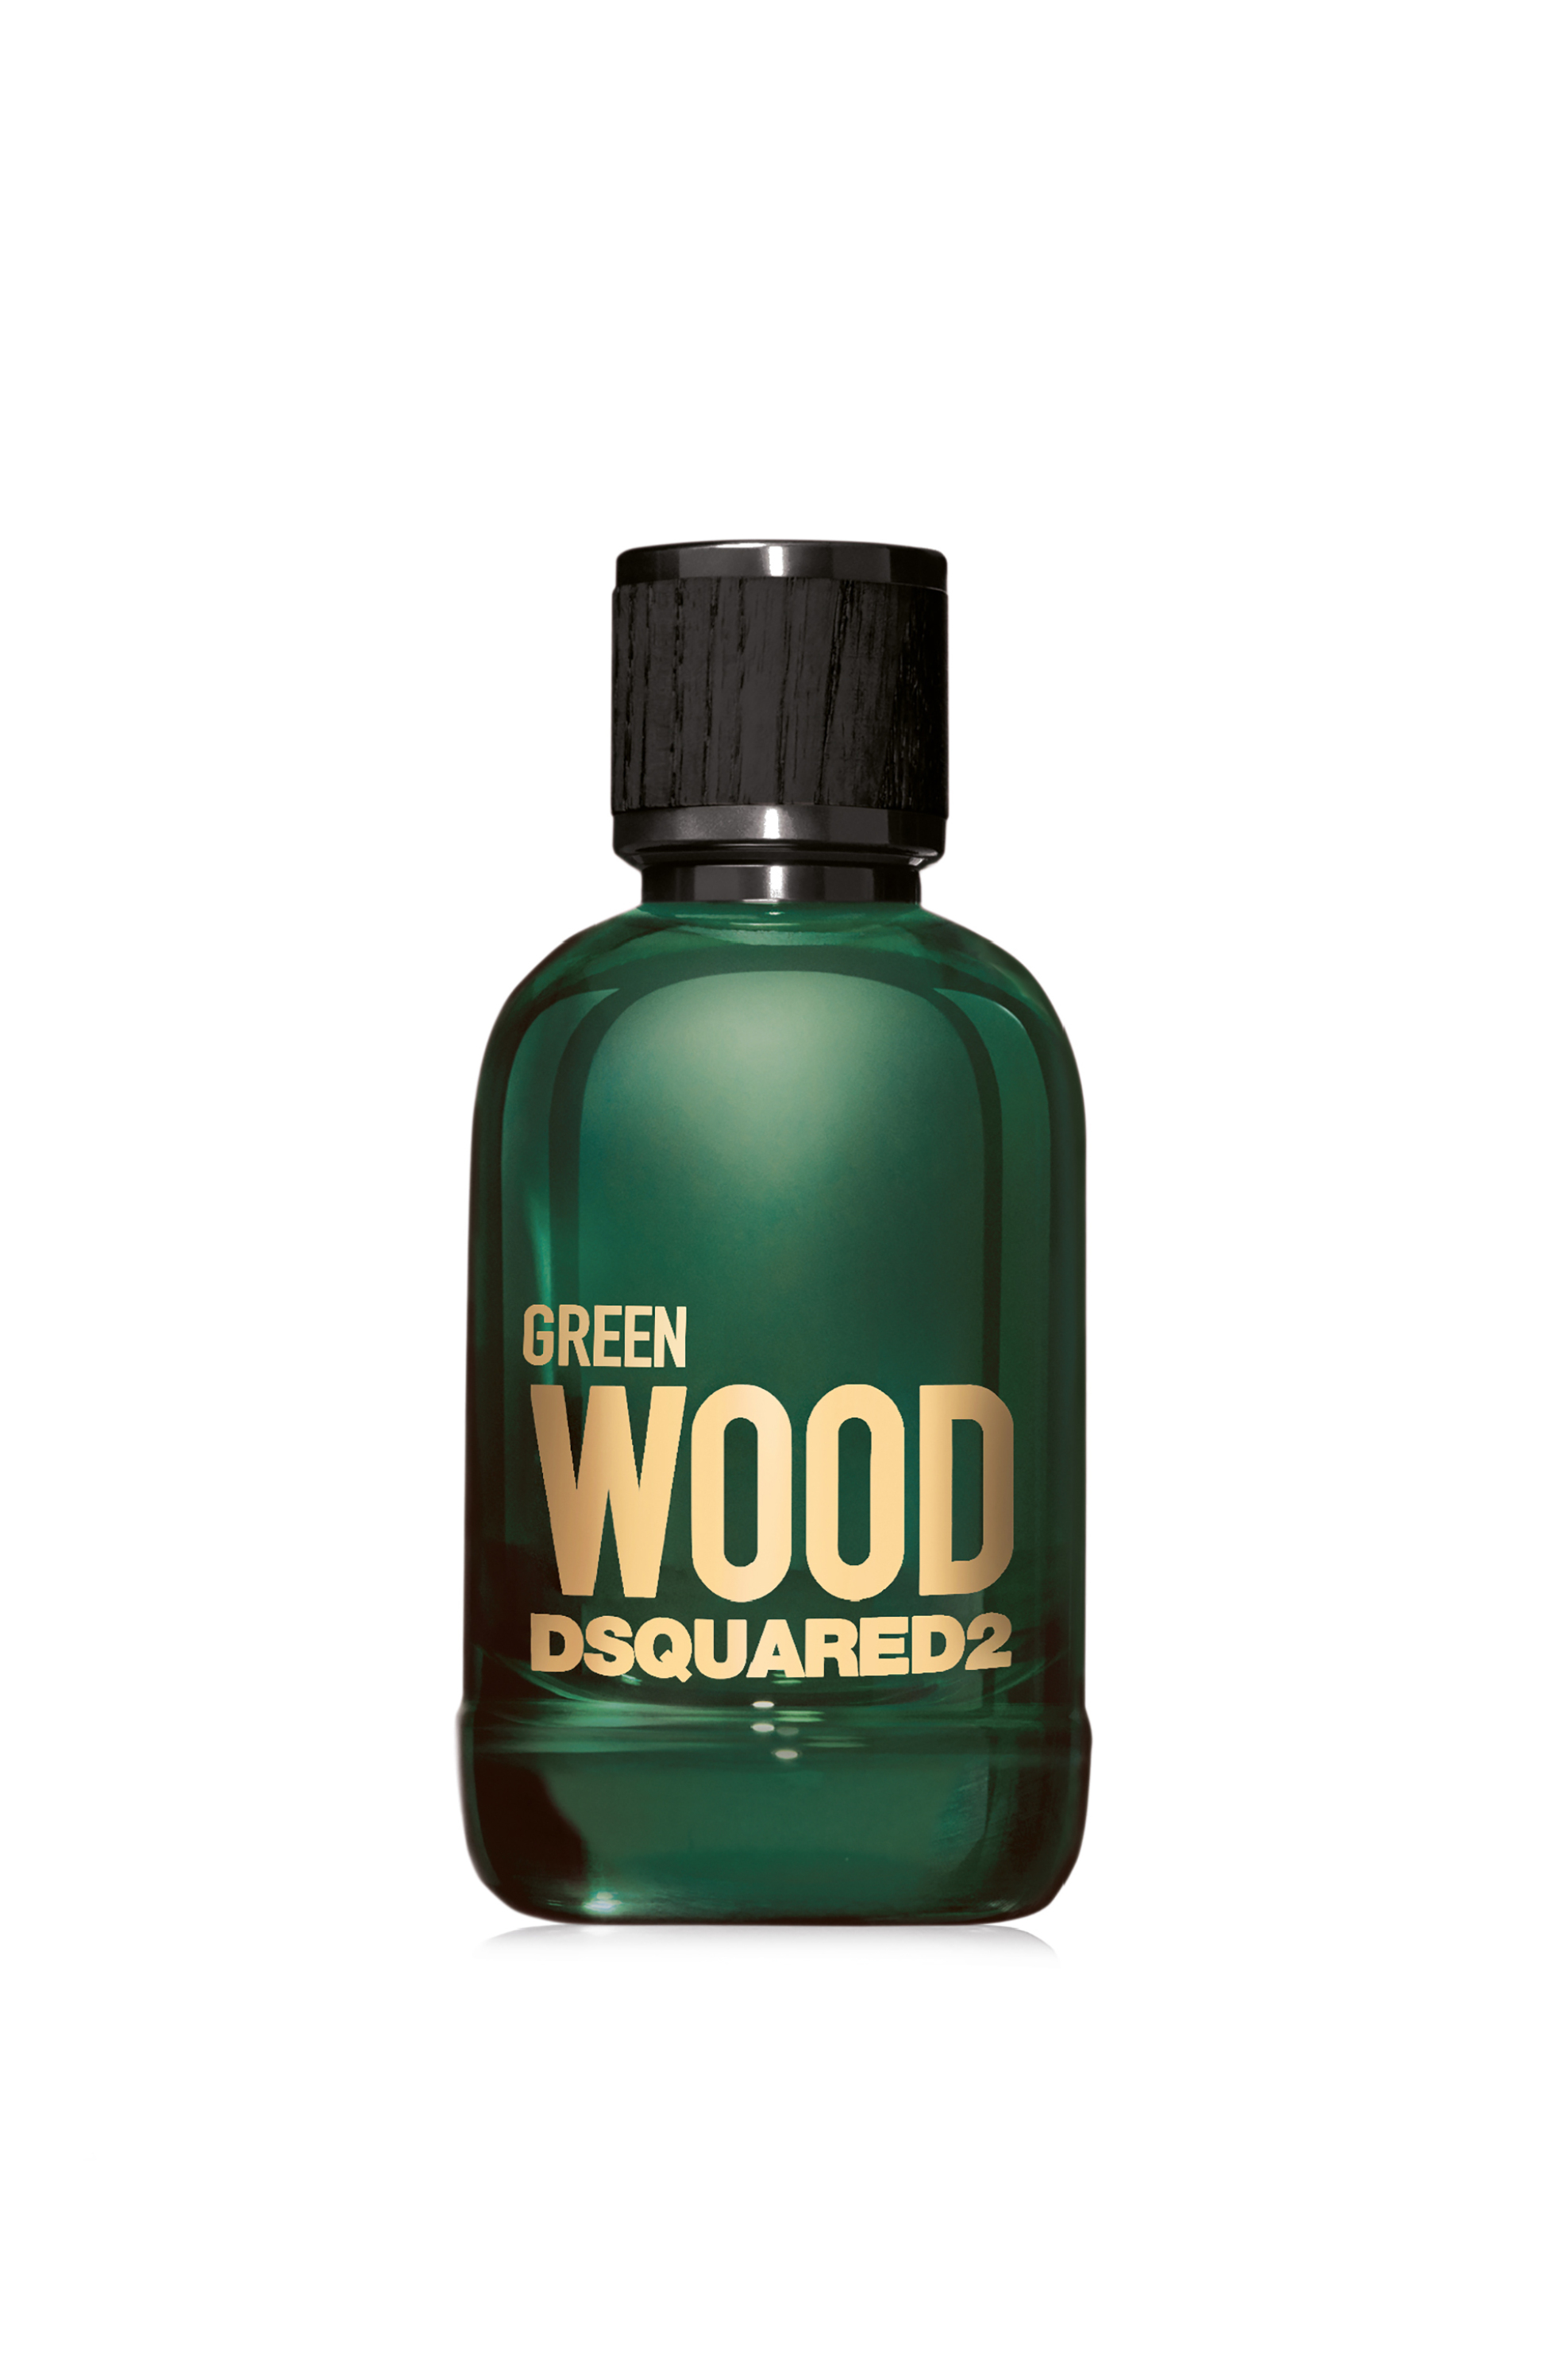 Ομορφιά > ΑΡΩΜΑΤΑ > Ανδρικά Αρώματα > Eau de Toilette Dsquared2 Wood Green Pour Homme Eau De Toilette Natural Spray - 5D10